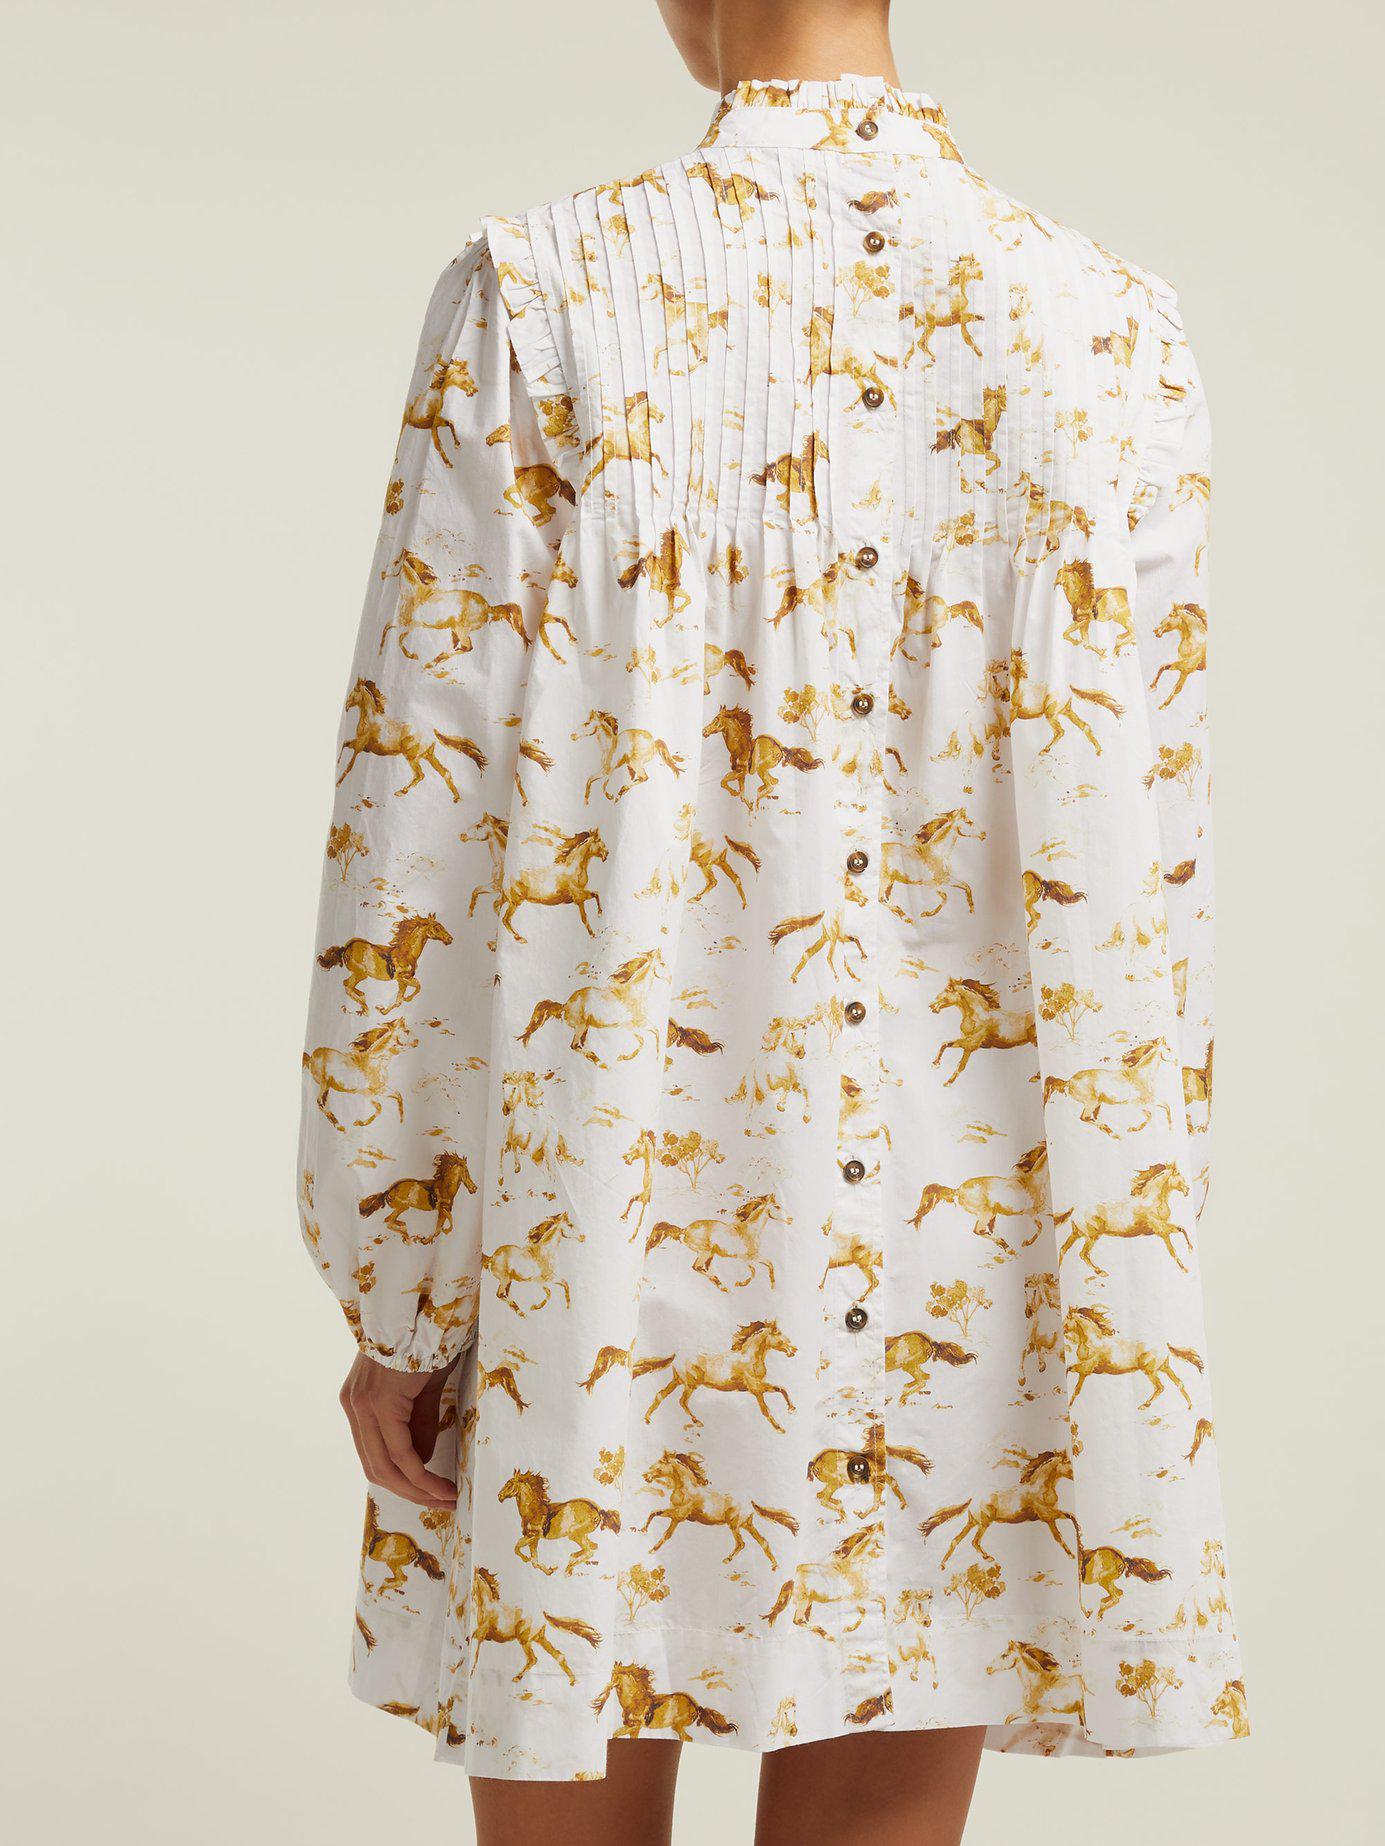 Ganni Cotton Women's Weston Print Dress in White - Lyst